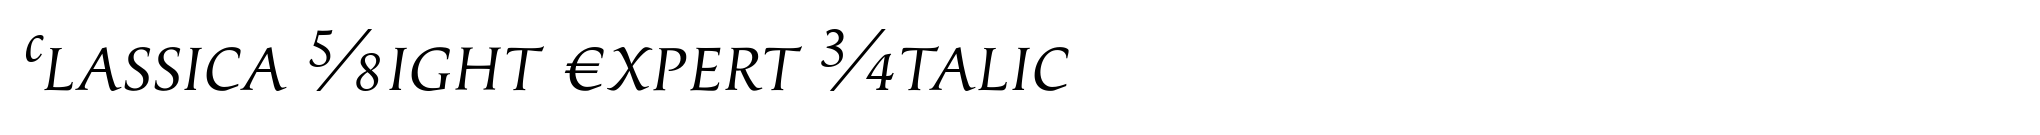 Classica Light Expert Italic image